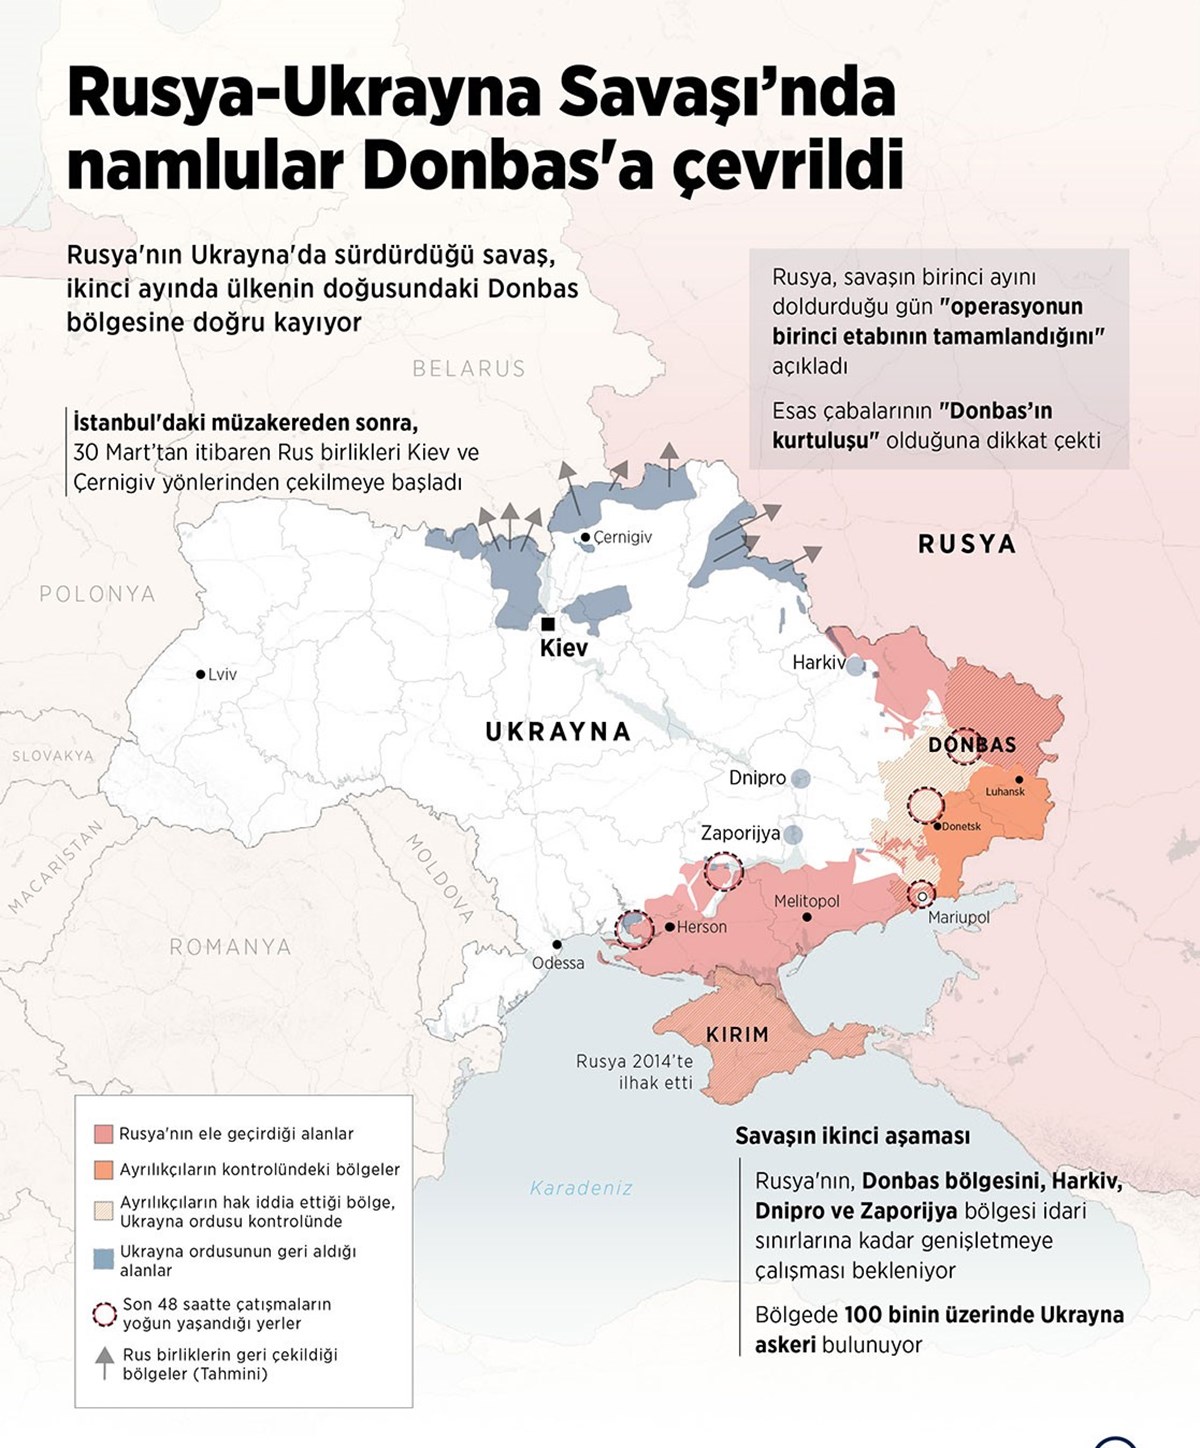 Rus birlikleri, savaşın ikinci aşamasında hedefini Ukrayna